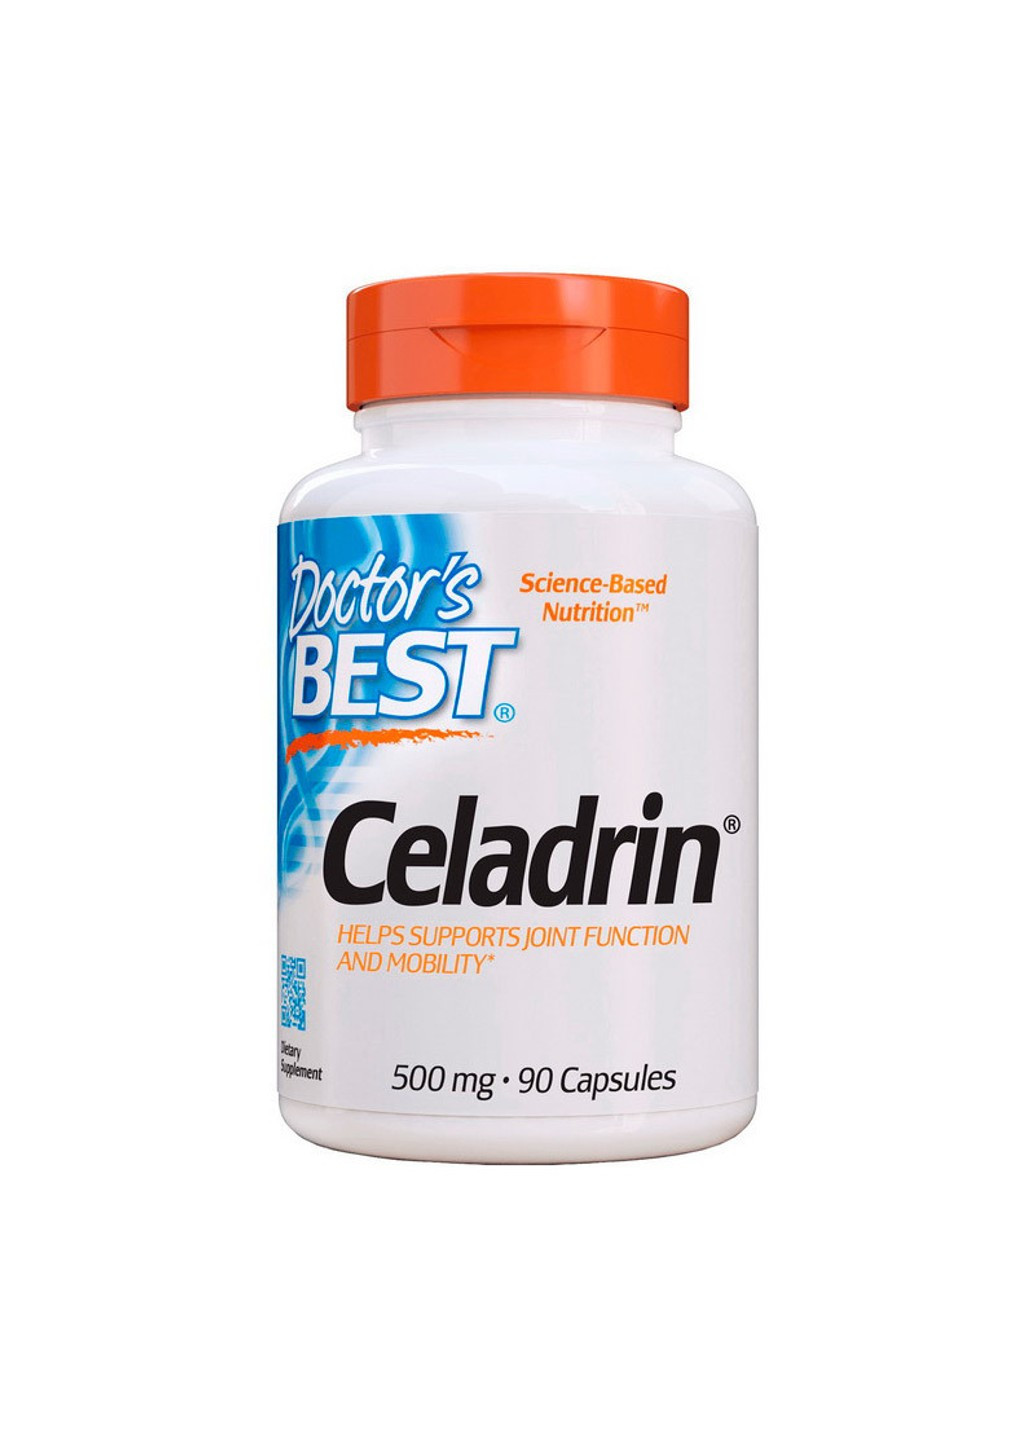 Хондропротектор Celadrin (90 капс) доктогр бест Doctor's Best (255409812)